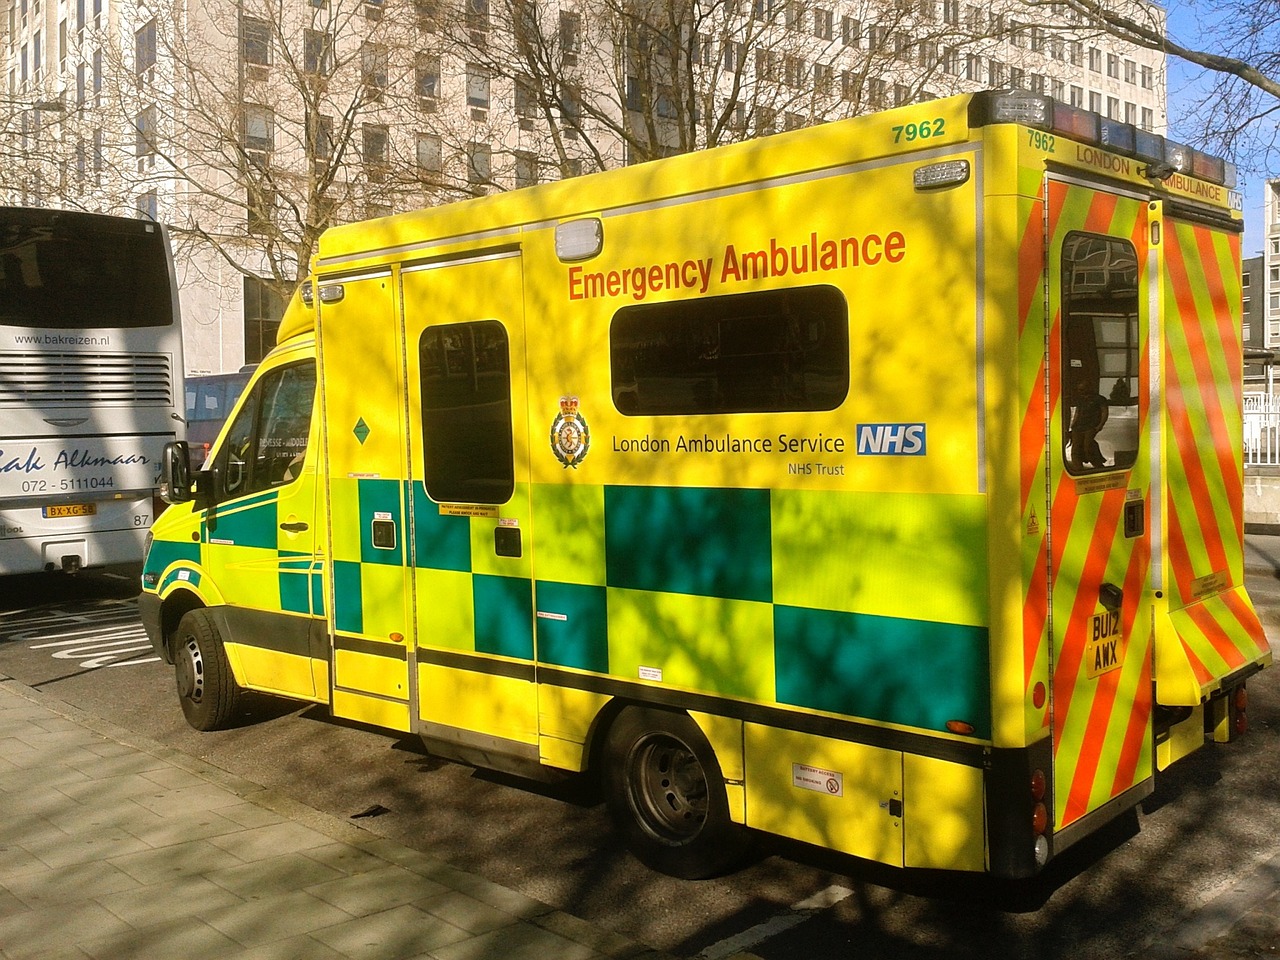 A parked ambulance